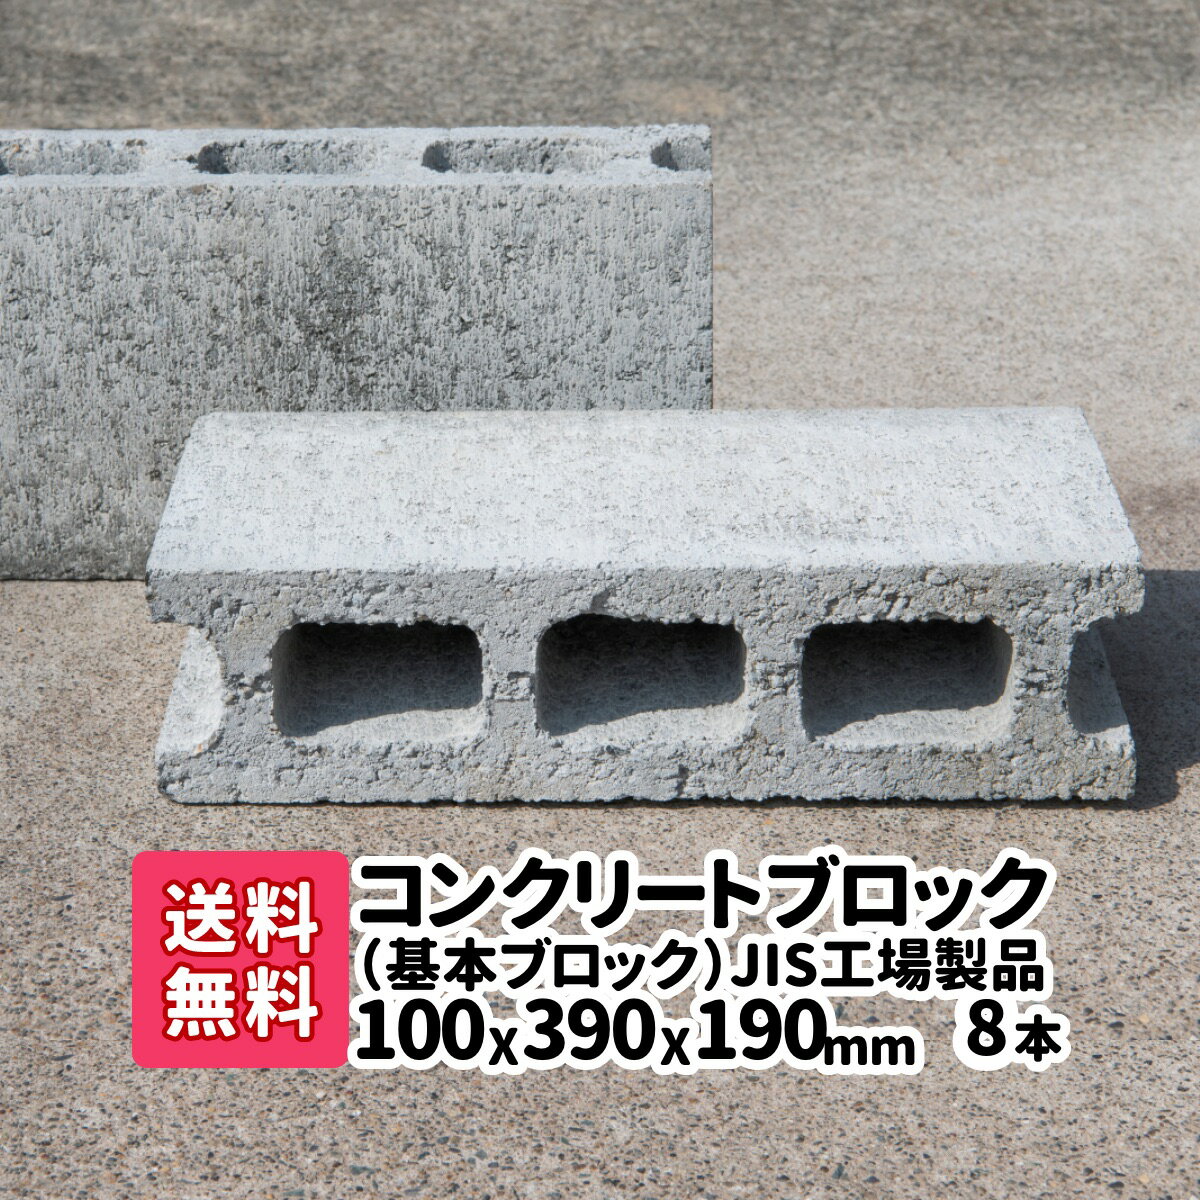 【送料無料】8本(2本×4)JIS工場製品コンクリートブロック 基本 厚み100mm×横390mm×縦190mm 基 台 ブロック塀 ブロック エアコン台 物置の基礎